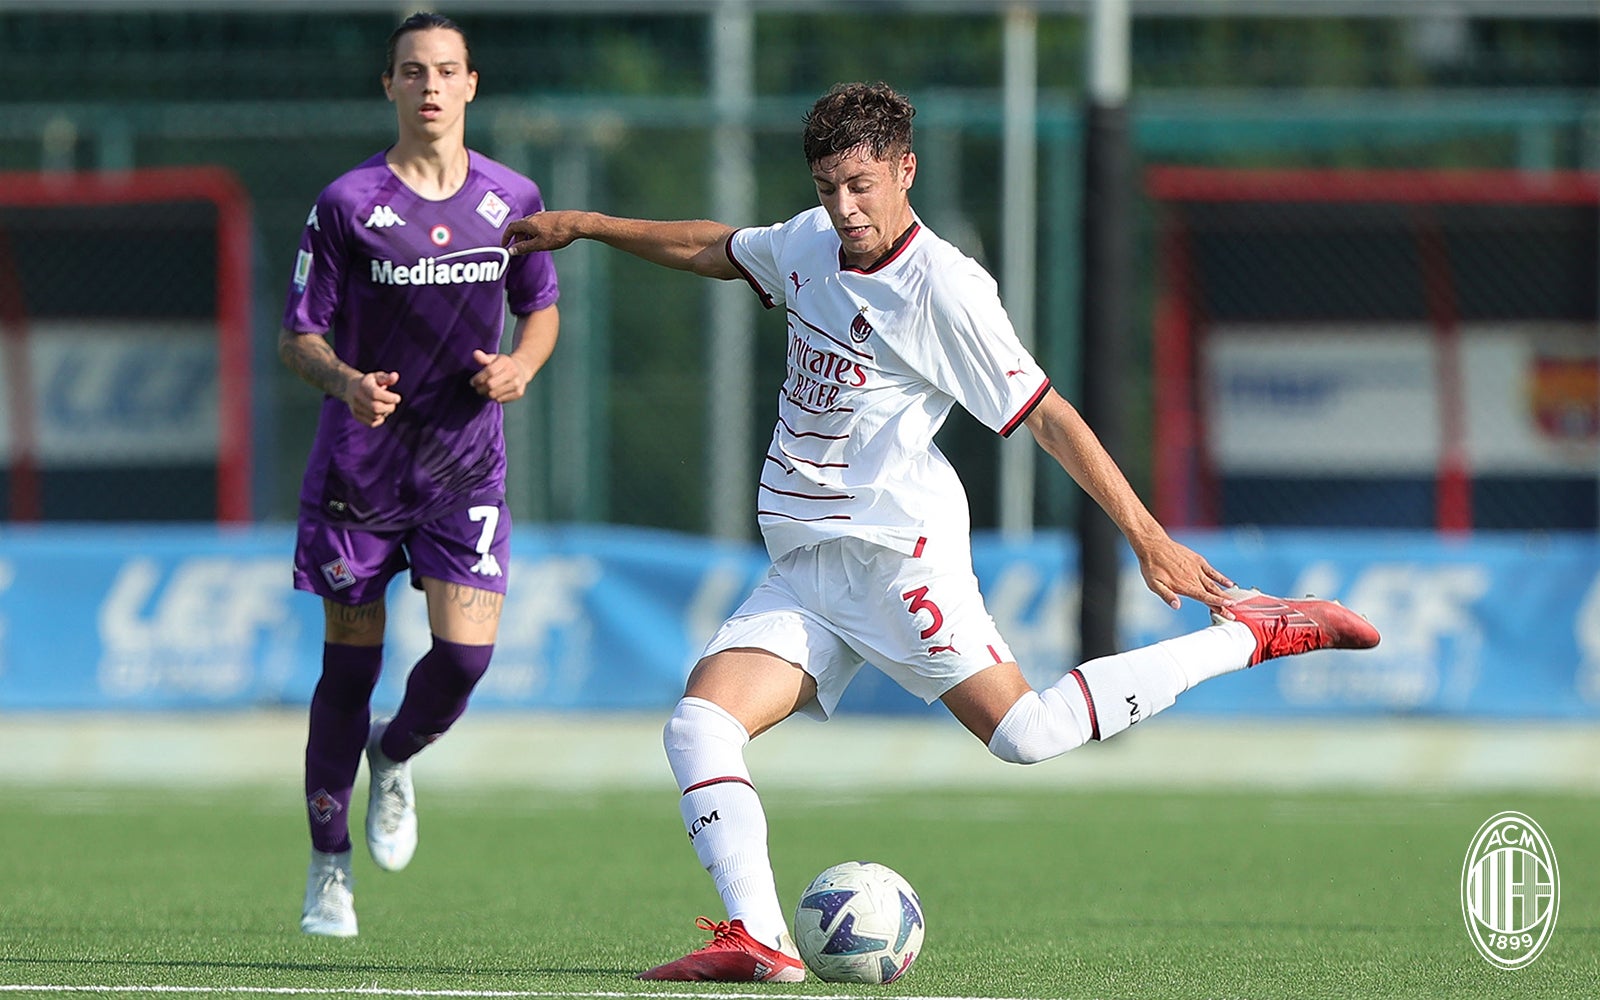 ACF Fiorentina U19 vs Milan U19, Campionato Primavera 1 TIMvision